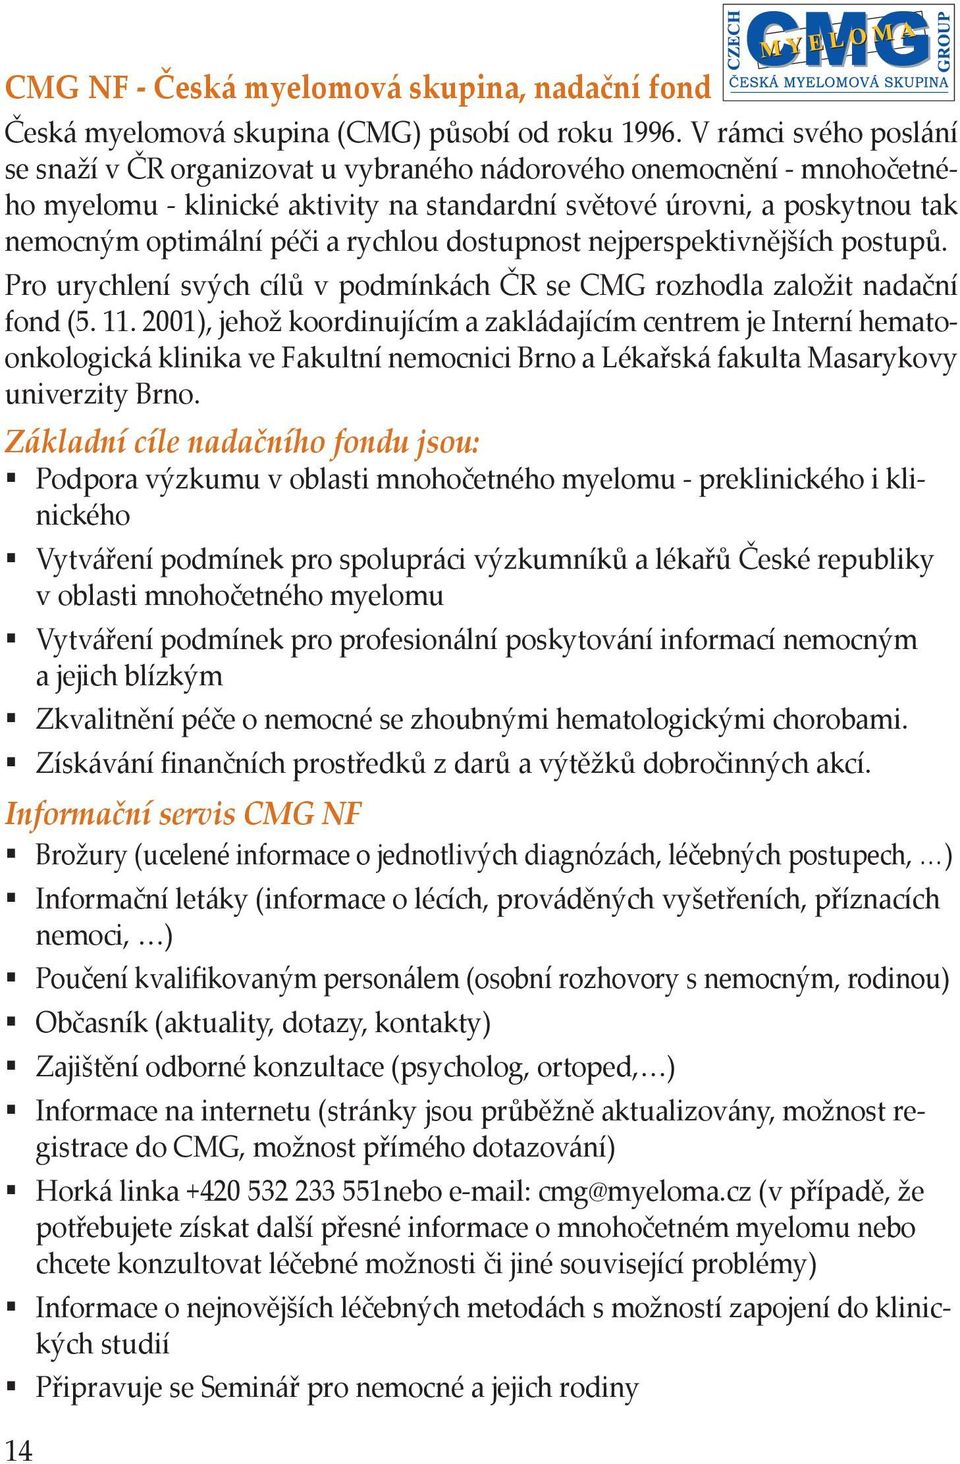 rychlou dostupnost nejperspektivnějších postupů. Pro urychlení svých cílů v podmínkách ČR se CMG rozhodla založit nadační fond (5. 11.